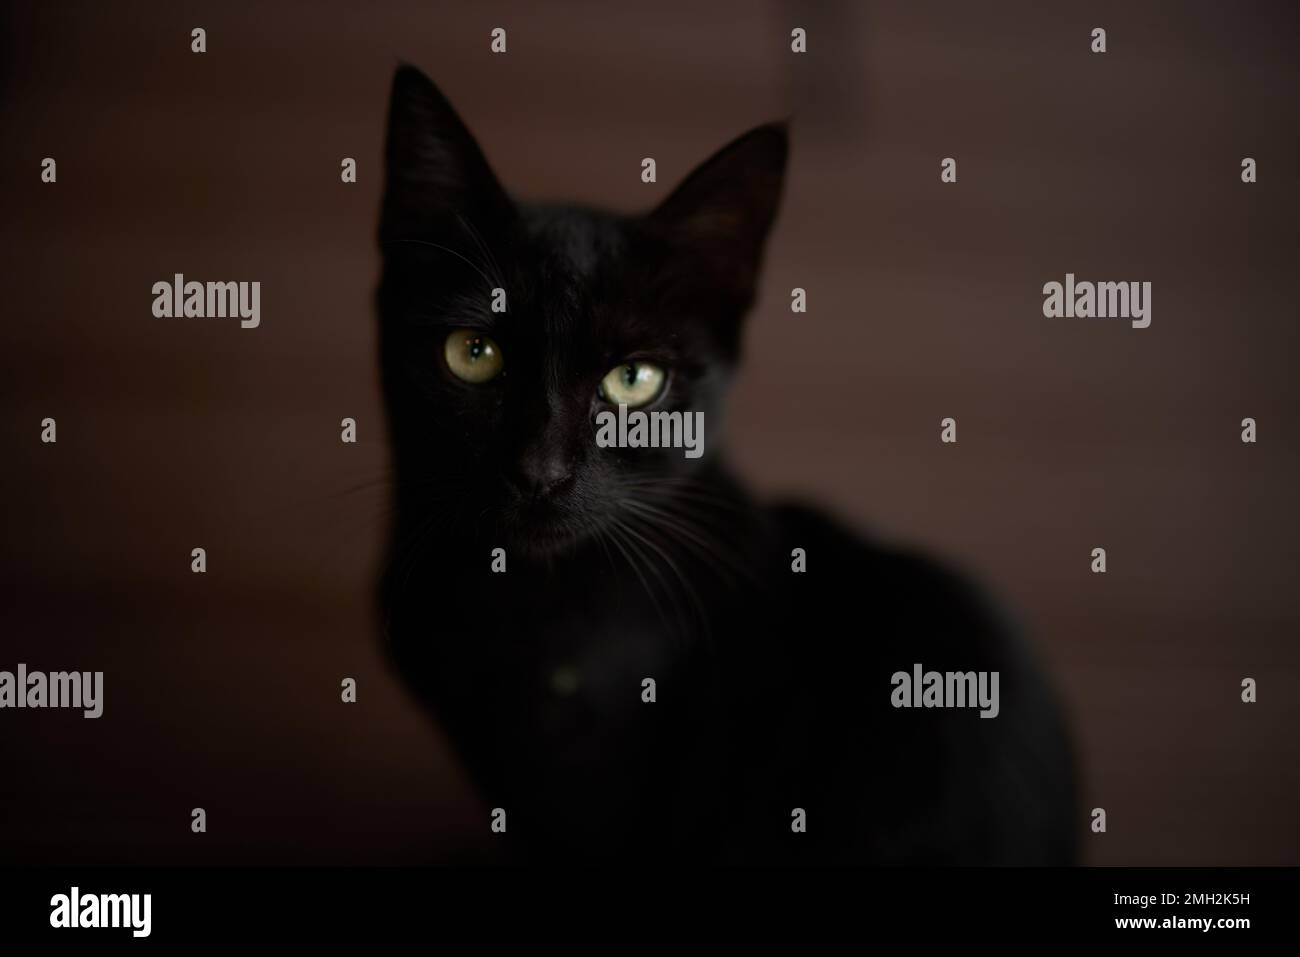 Le chat noir se rapproche de l'appareil photo à la maison, contre le sol Banque D'Images